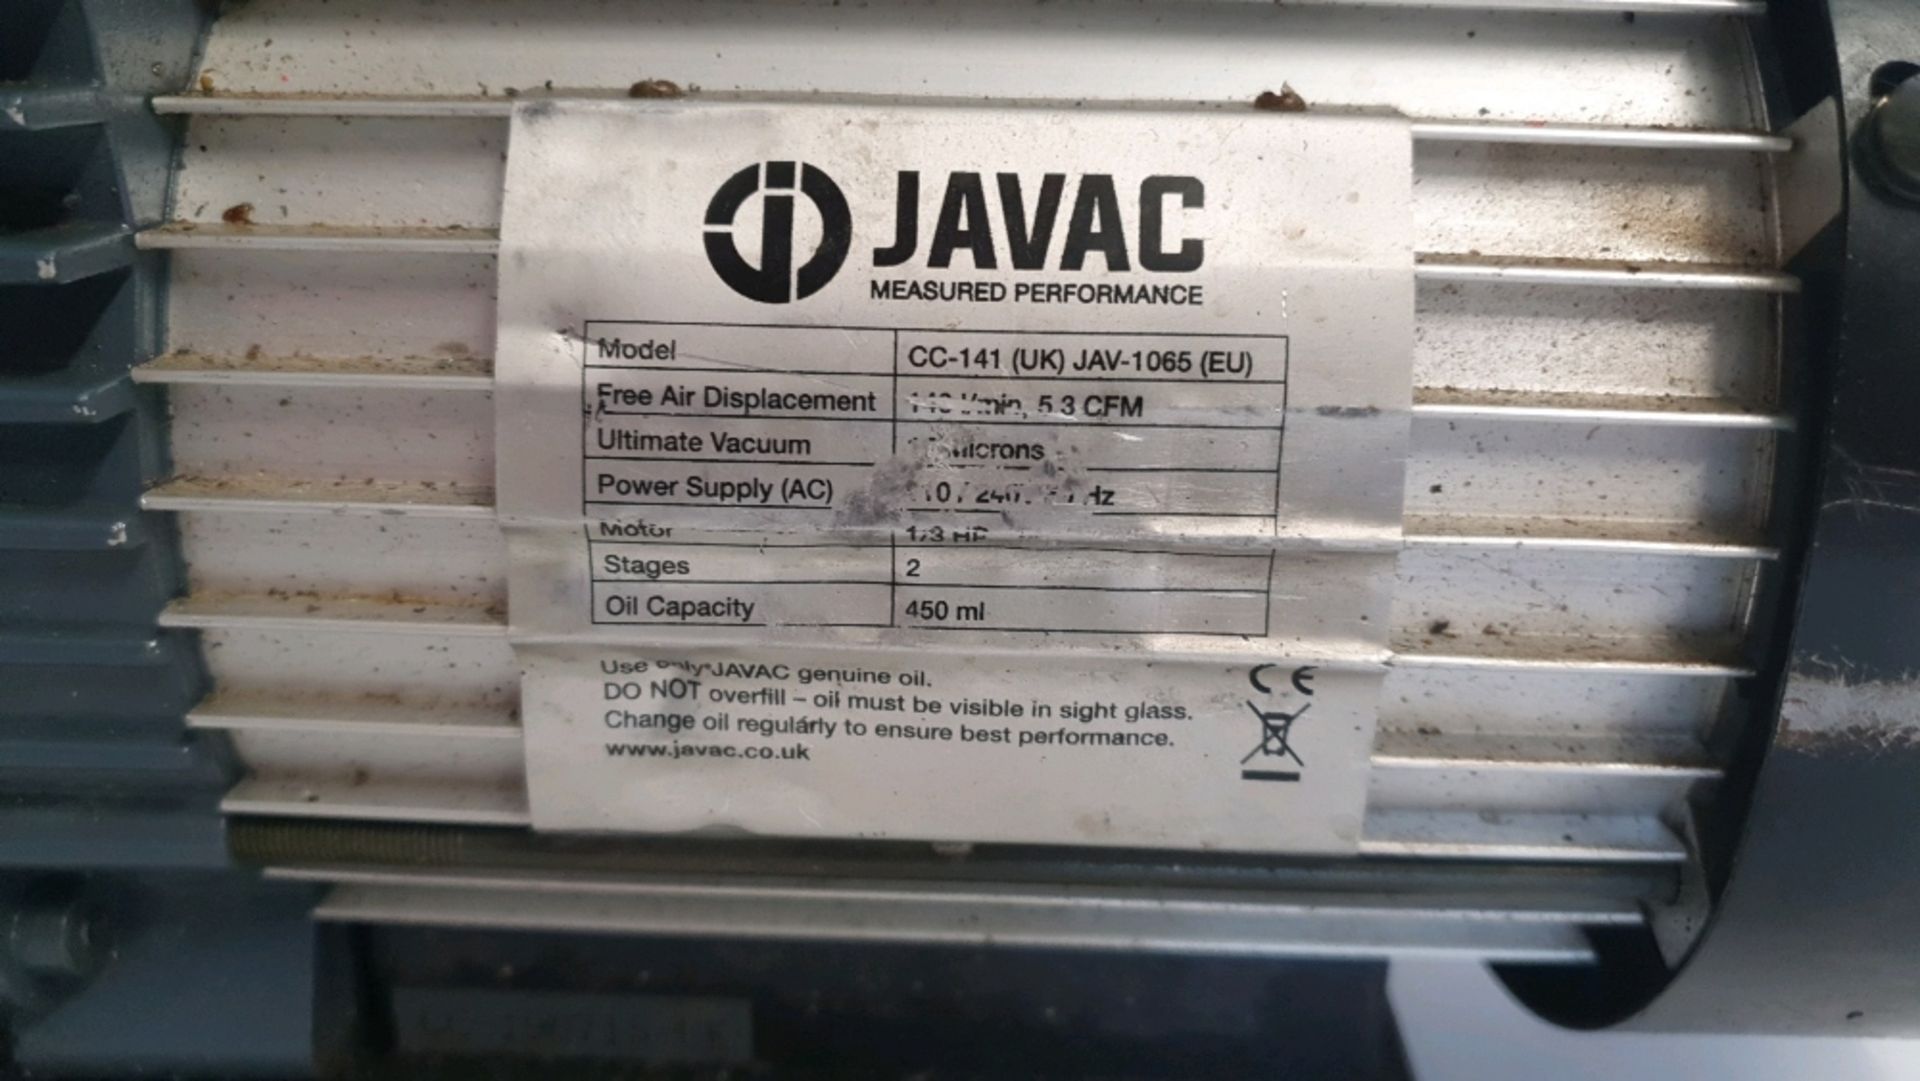 Javac CC-141 Vacuum Pump Dual Voltage Refrigeration Air Conditioning 5.3 CFM - Image 2 of 2